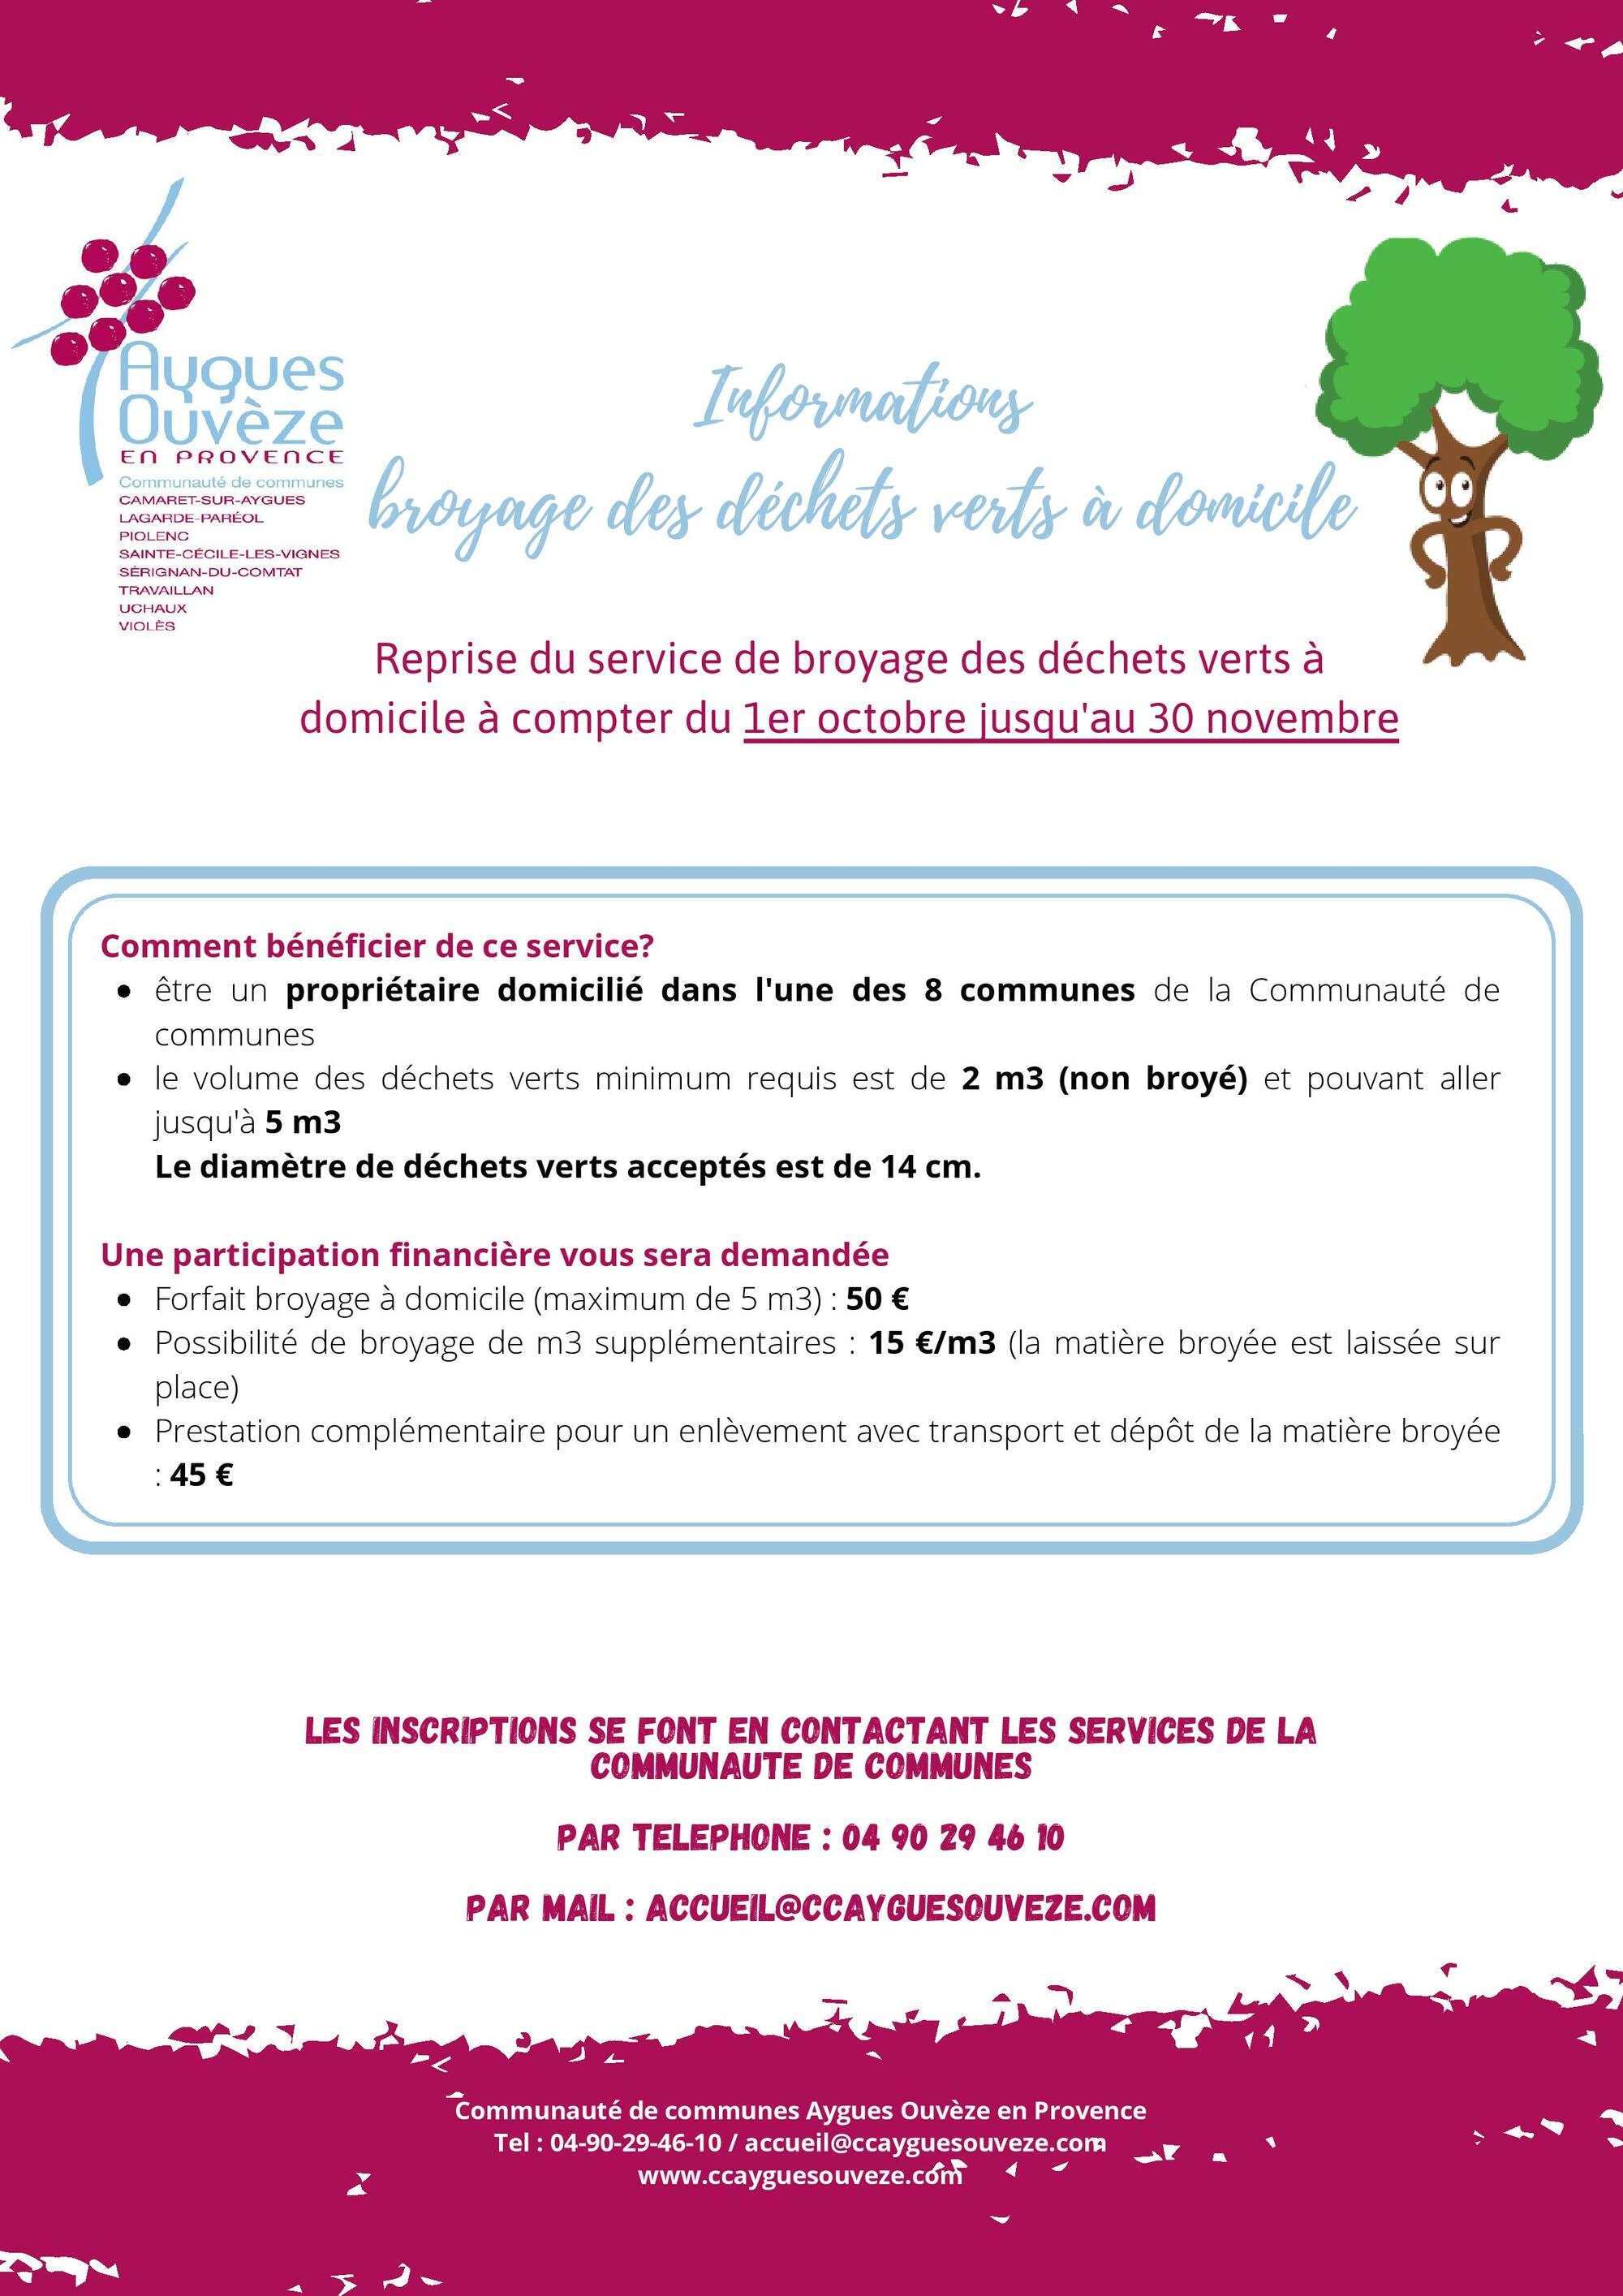 Informations de la Communauté de communes Aygues Ouvèze en Provence concernant le broyage des déchets verts à domicile